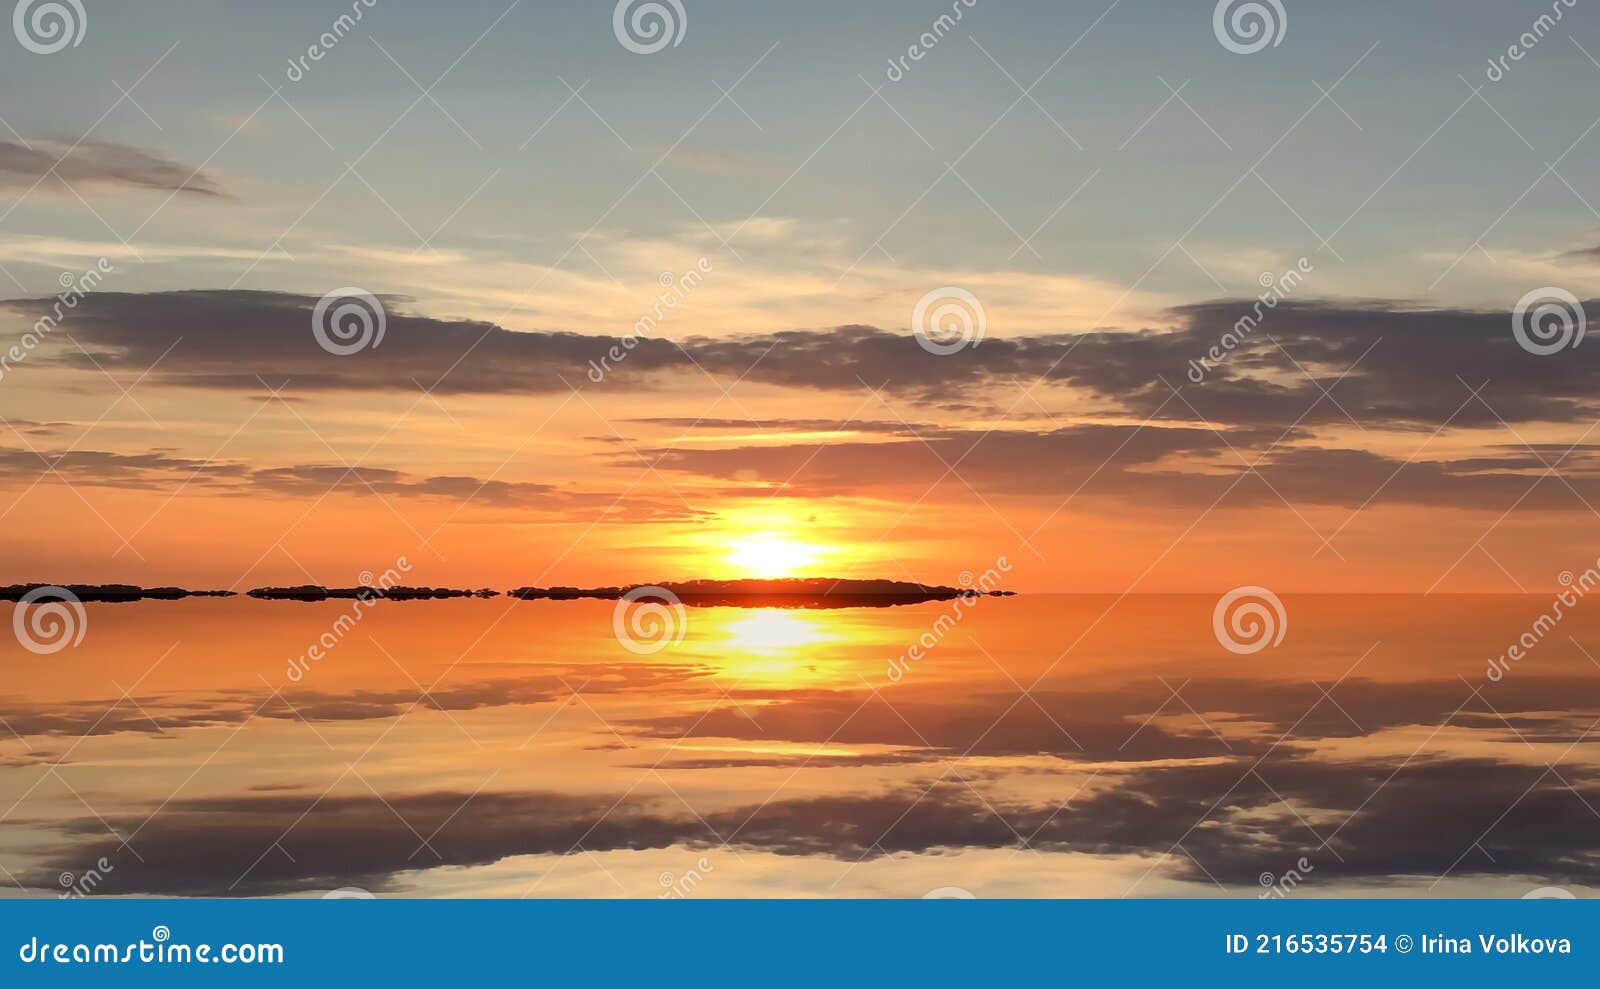 закат на море оранжевое золото сиреневый розовый желтый синий цветные тучи  отражение на воде волна драматические пушистые облака н Иллюстрация штока -  иллюстрации насчитывающей небо, утро: 216535754